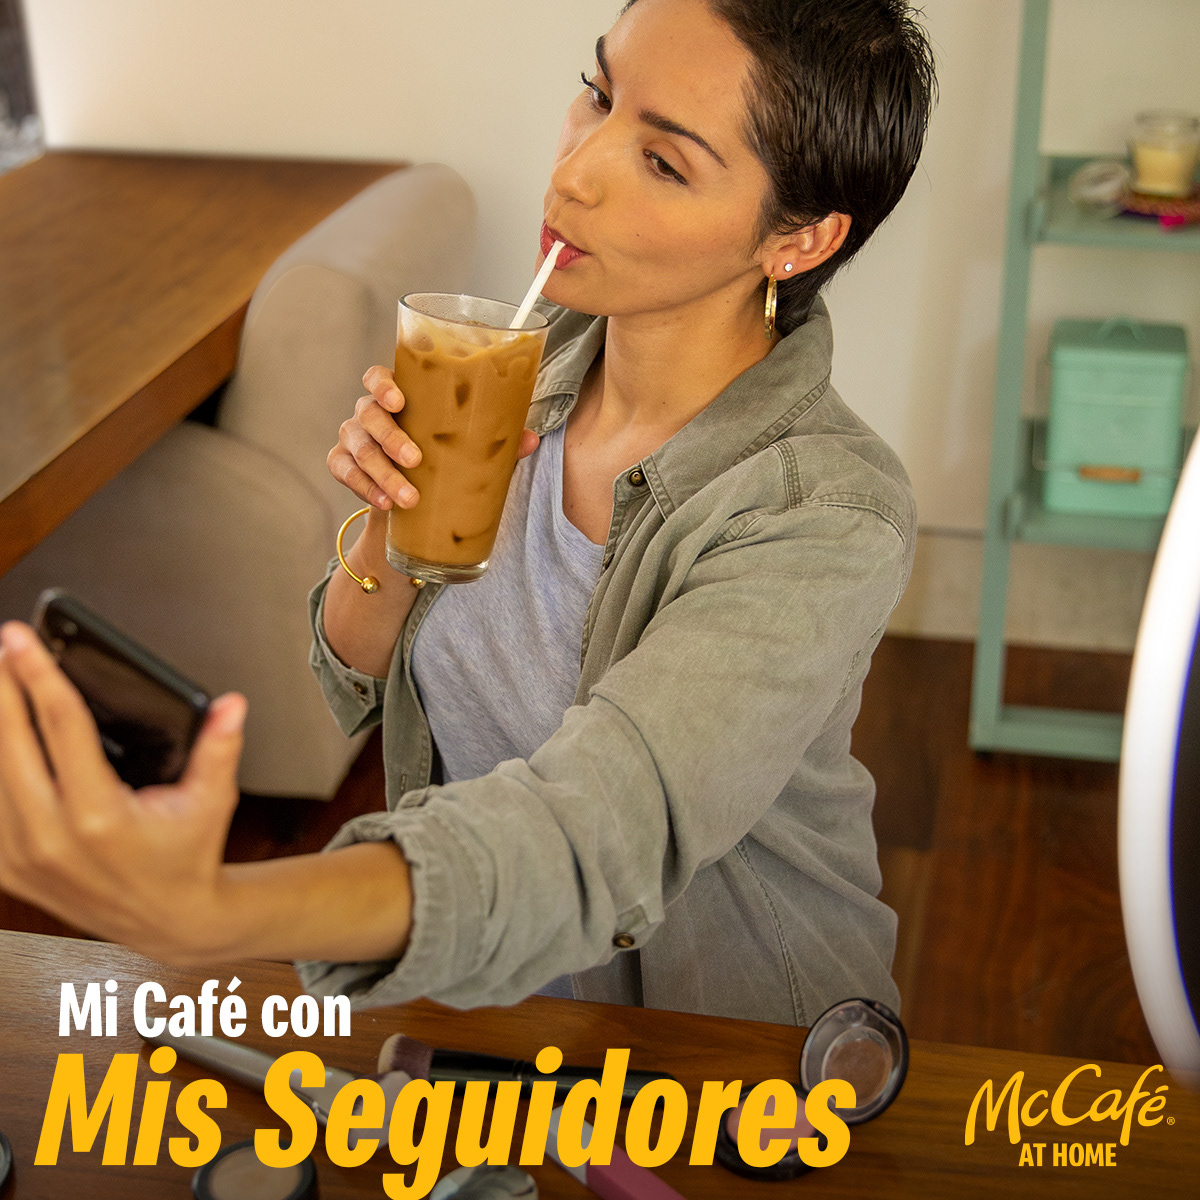 cafe cápsulas de café Coffee coffee pods keurig mccafe McDonalds